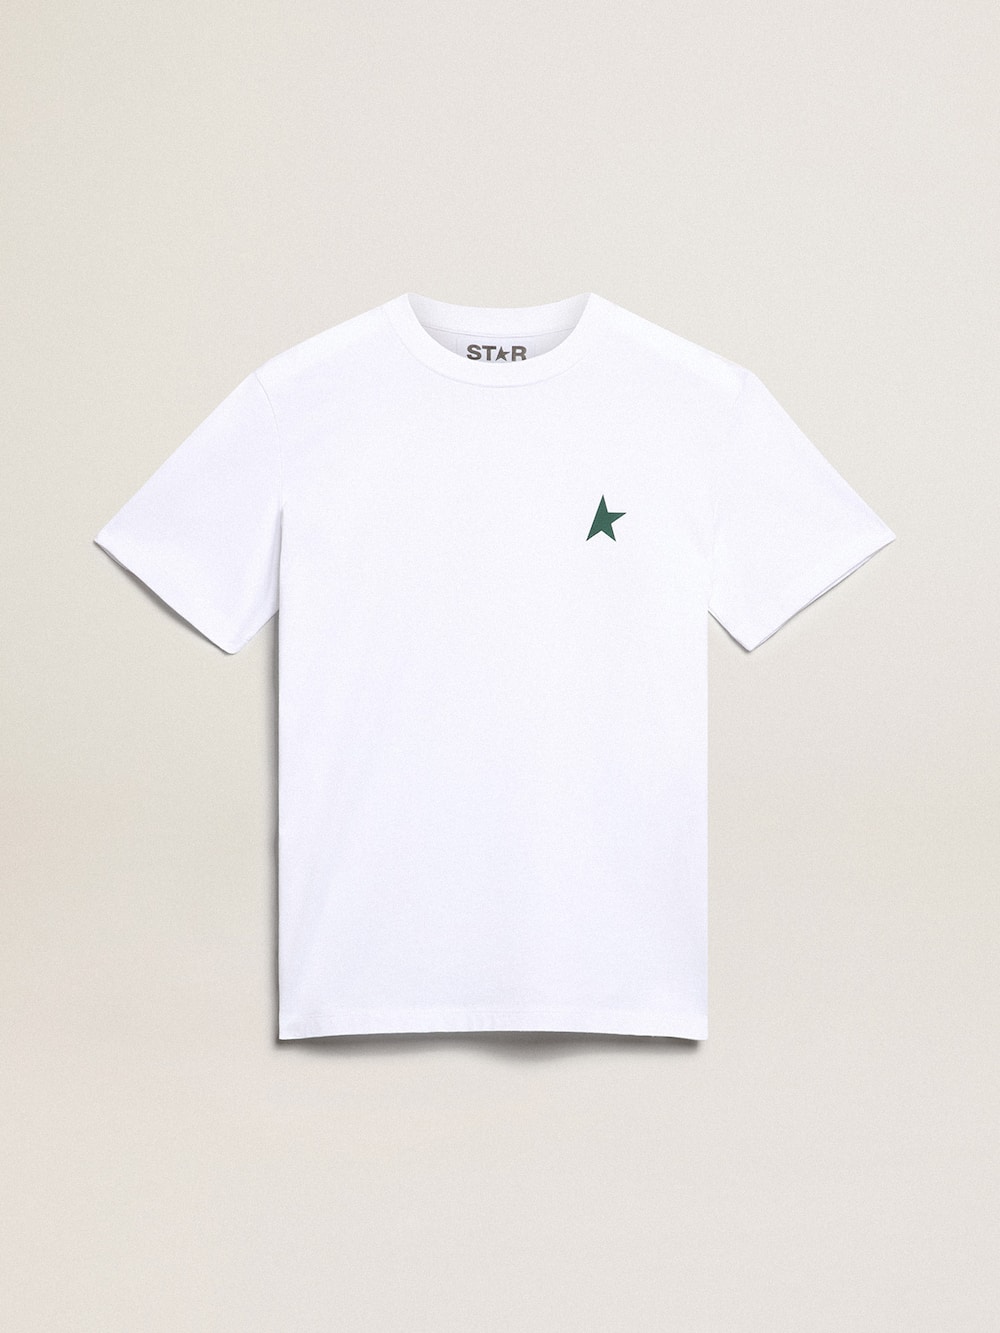 Golden Goose - T-shirt femme blanc avec étoile verte sur le devant in 